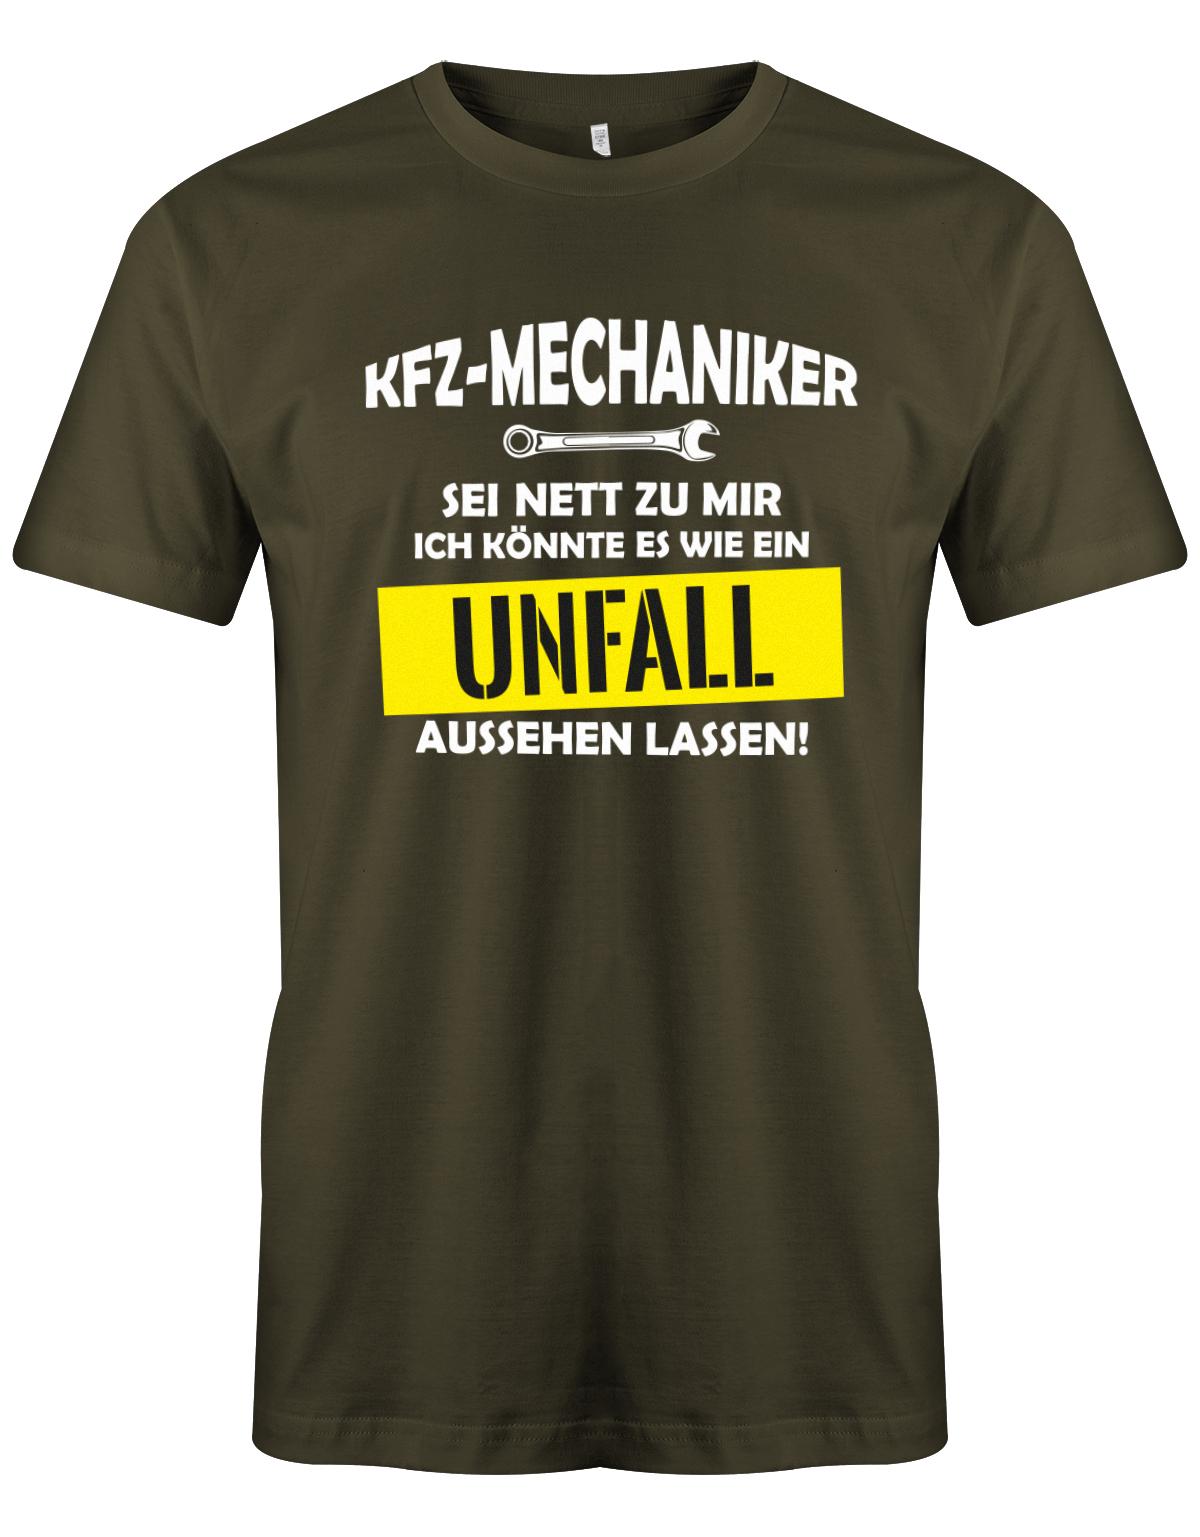 KFZ Mechaniker Shirt - KFZ Mechaniker Sei nett zu mir, ich könnte es wie ein Unfall aussehen lassen! Army